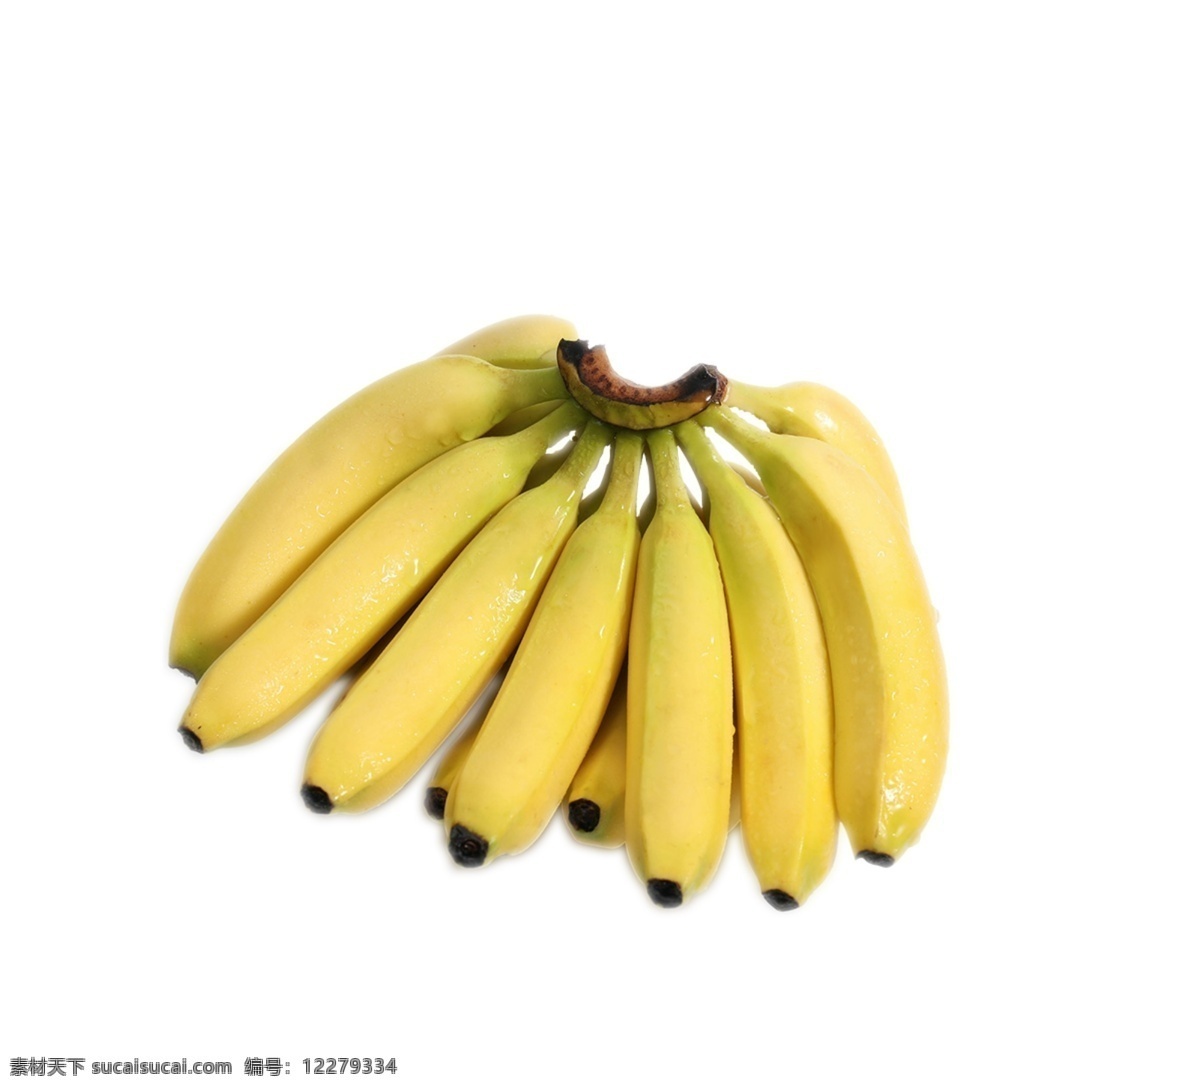 香蕉图片 png图片 png免抠 素材免抠 免抠素材 免抠元素 免抠 ps免抠 抠图 切片 新鲜 水果 空运 进口 超市 生鲜 香蕉 超市生鲜百货 png素材